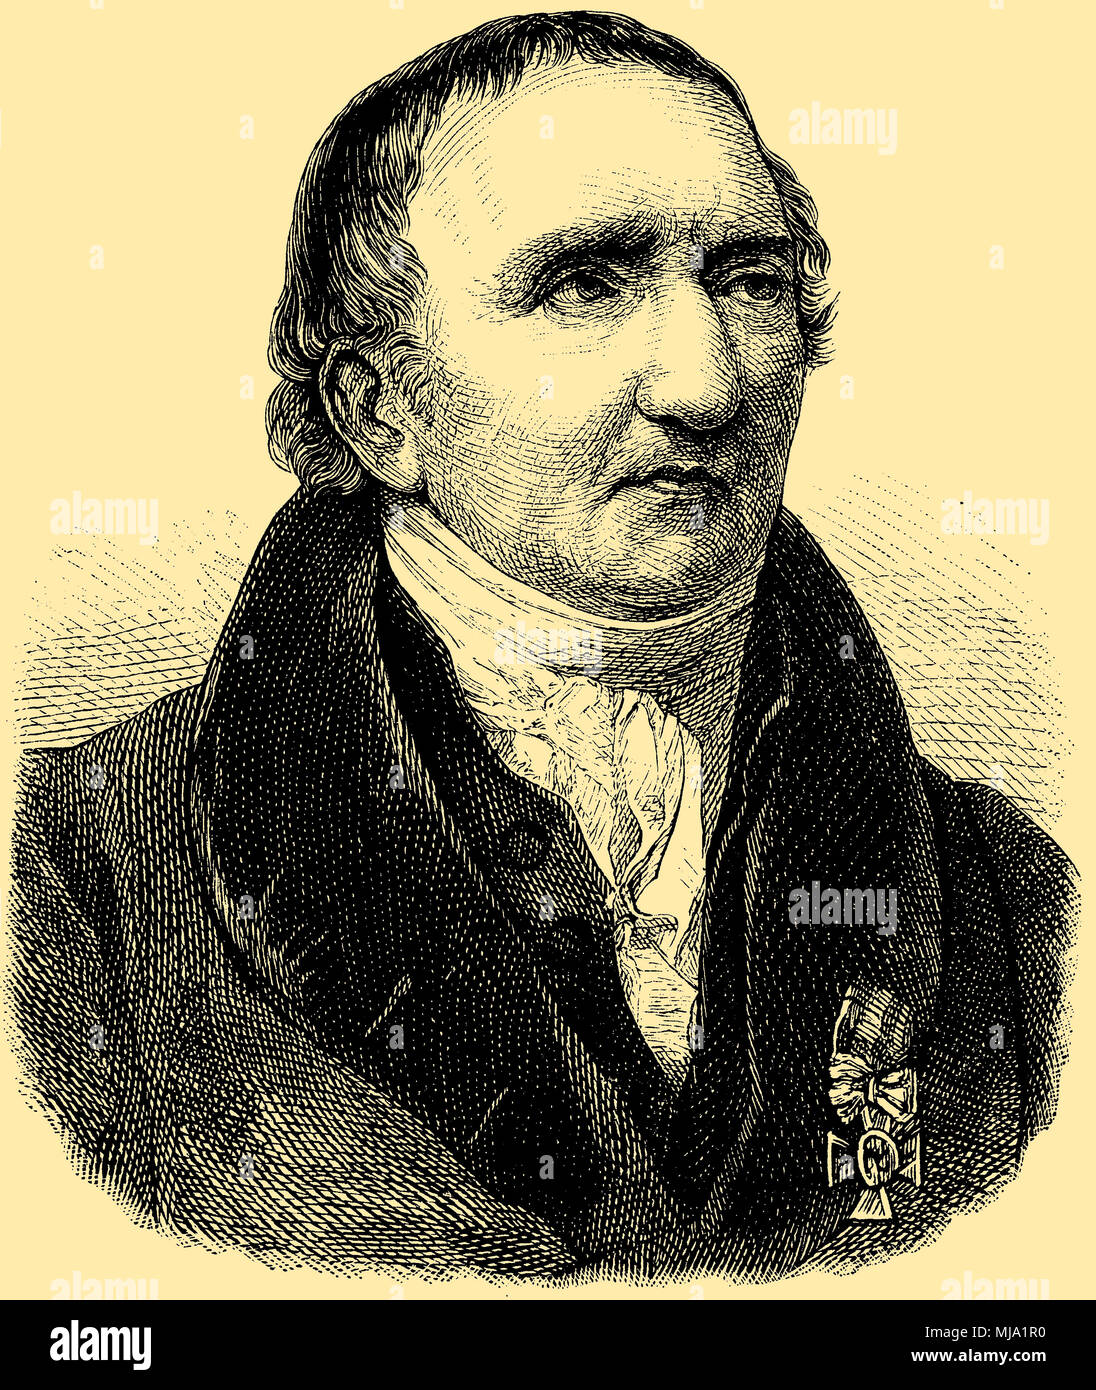 Johann Gottfried Schadow (20. Mai 1764 geboren, starb am 27. Januar 1850), Stockfoto